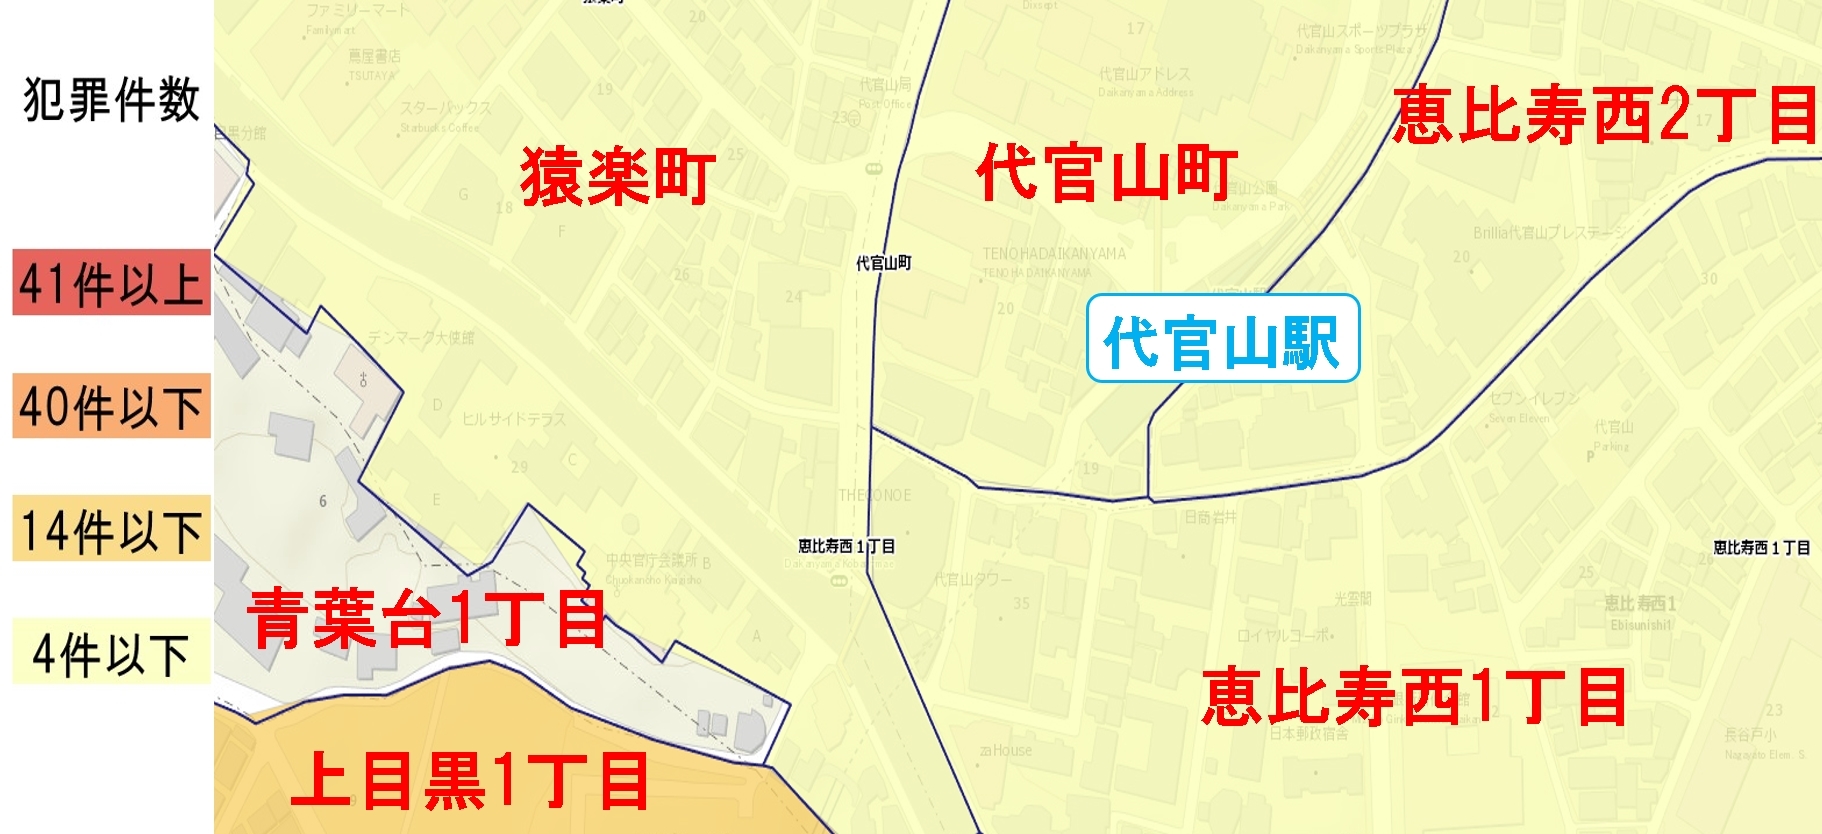 代官山駅周辺の粗暴犯の犯罪件数マップ